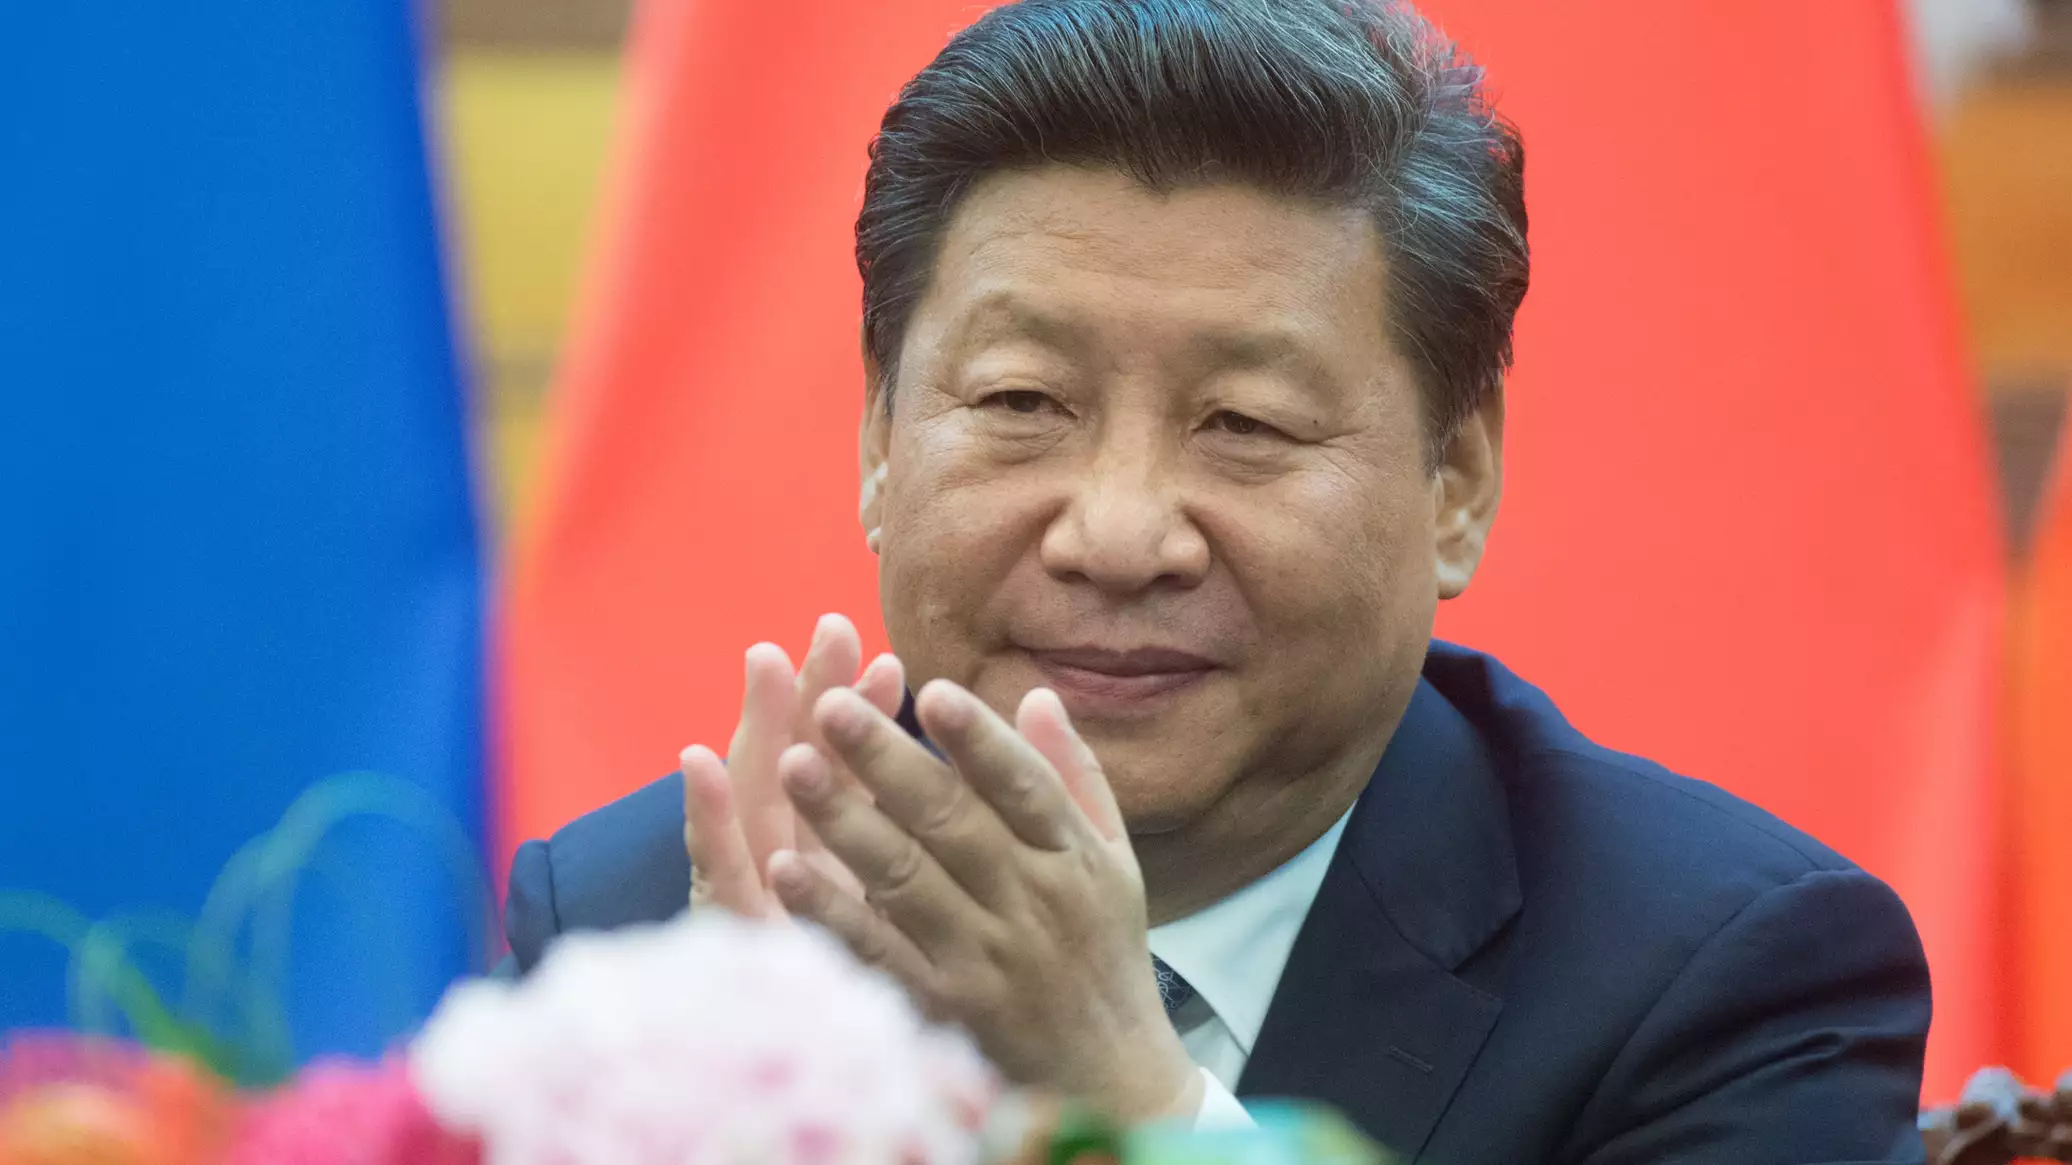 الرئيس الصيني: بكين تدعم عقد مؤتمر دولي للسلام تعترف به كل من روسيا وأوكرانيا